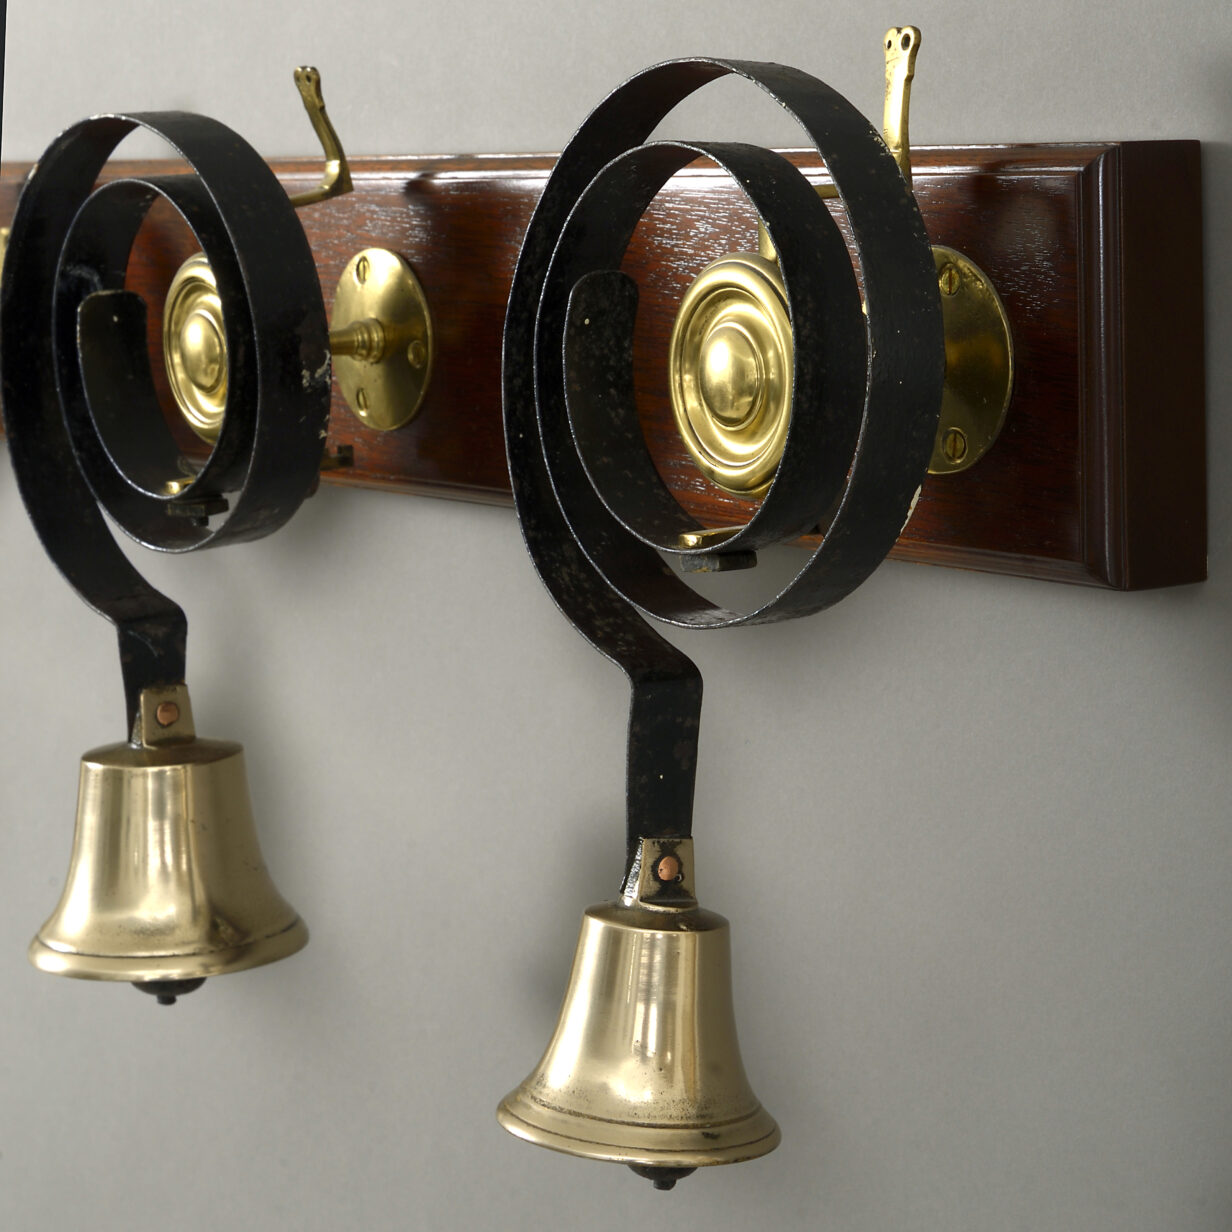 Six brass servants bells